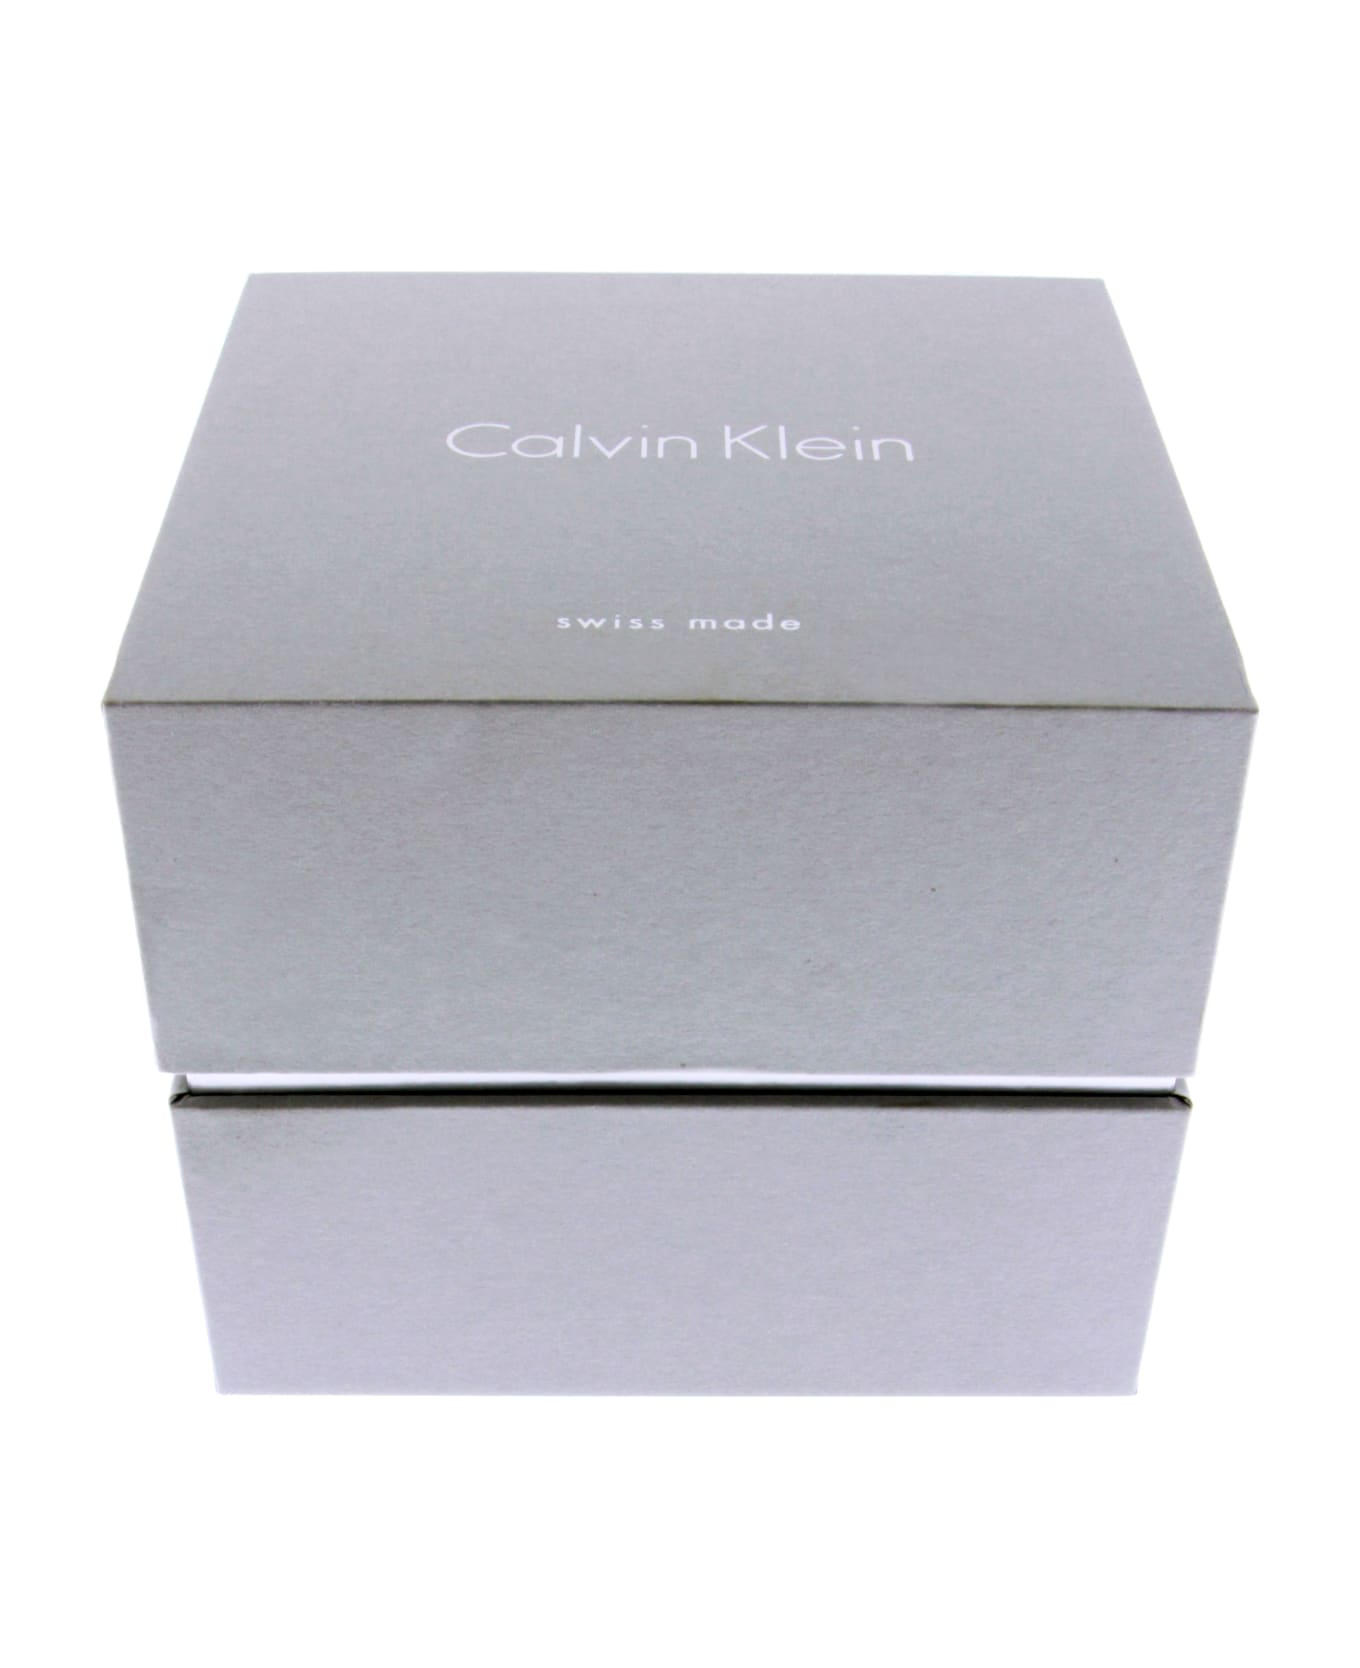 Calvin Klein K8m27121 High Noon Watches